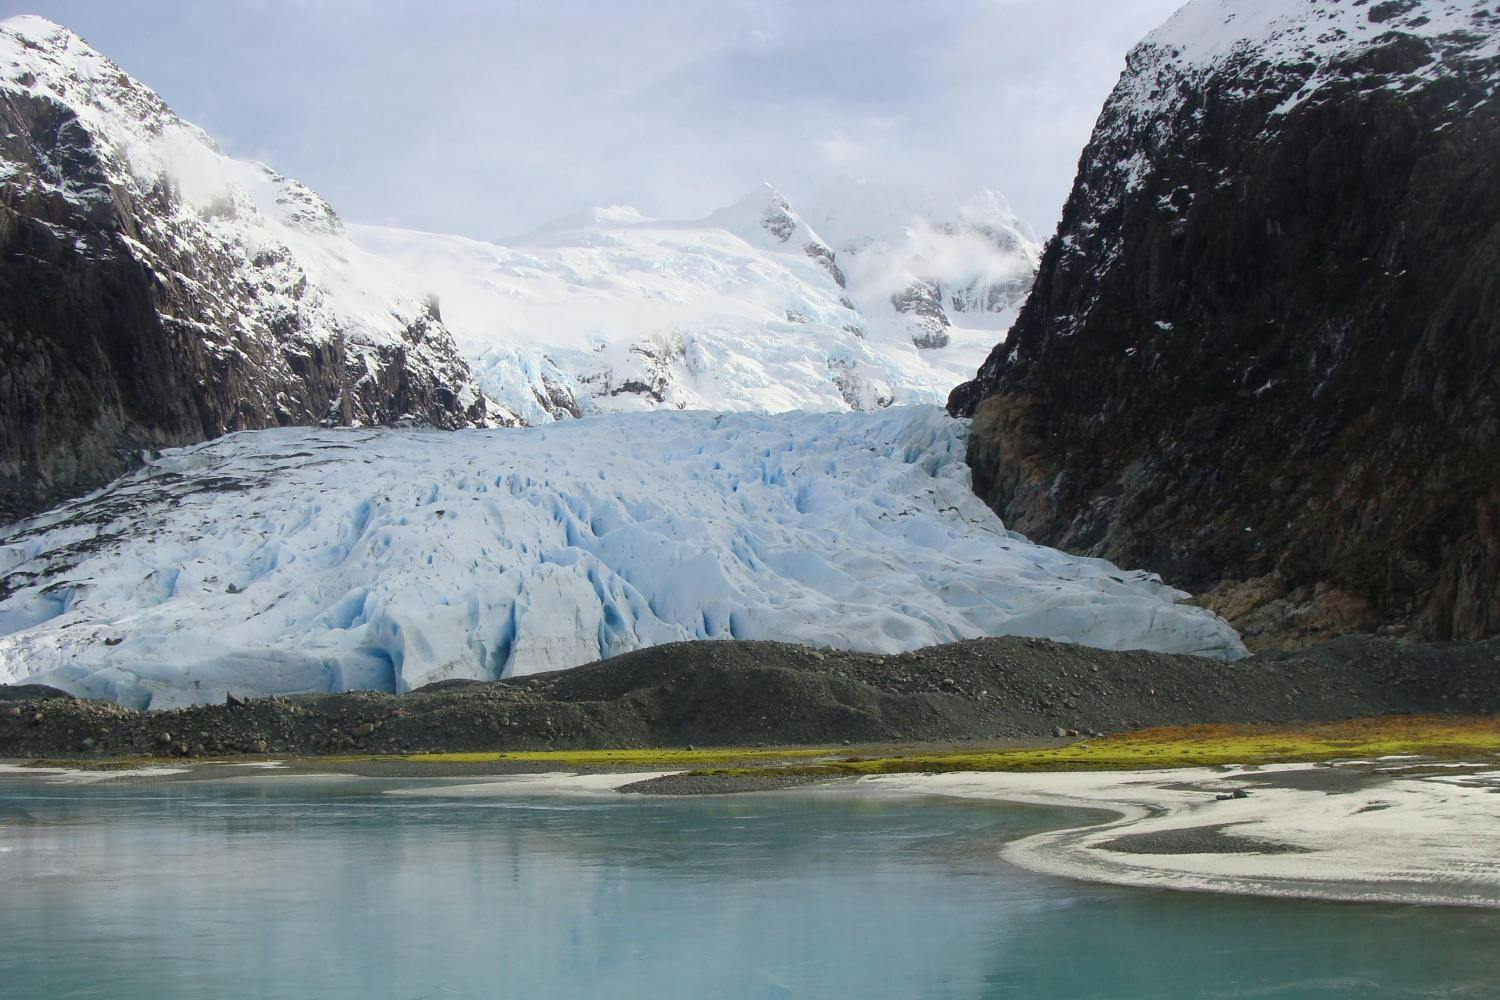 Crociera sui ghiacciai Balmaceda e Serrano con pranzo tradizionale della Patagonia